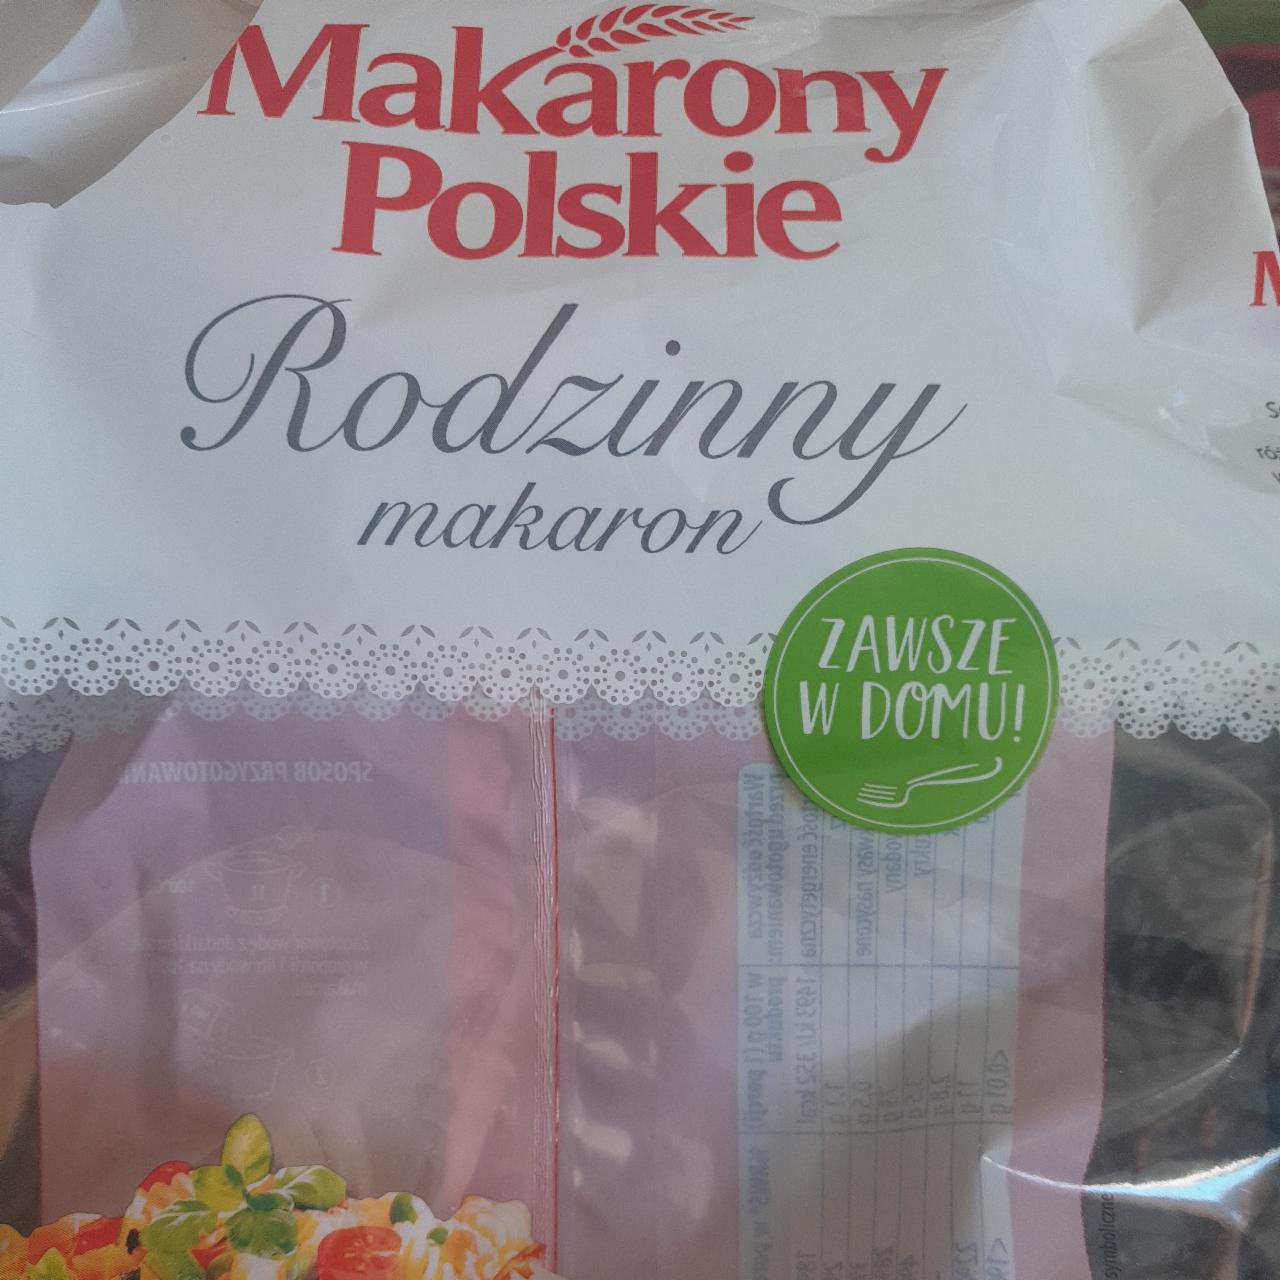 Zdjęcia - Rodzinny makaron Makarony Polskie